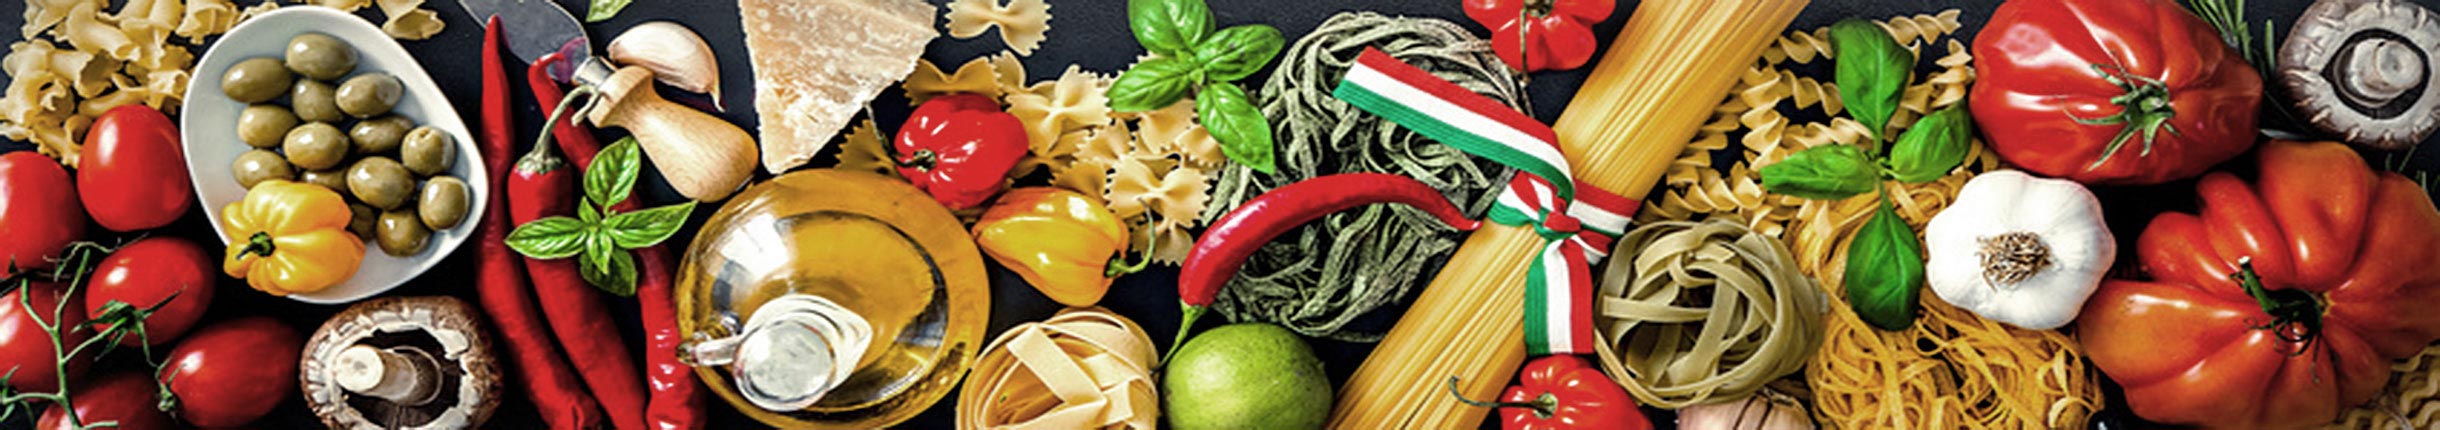 Italienische lebensmittel: Pasta, Basilikum, Tomaten ...